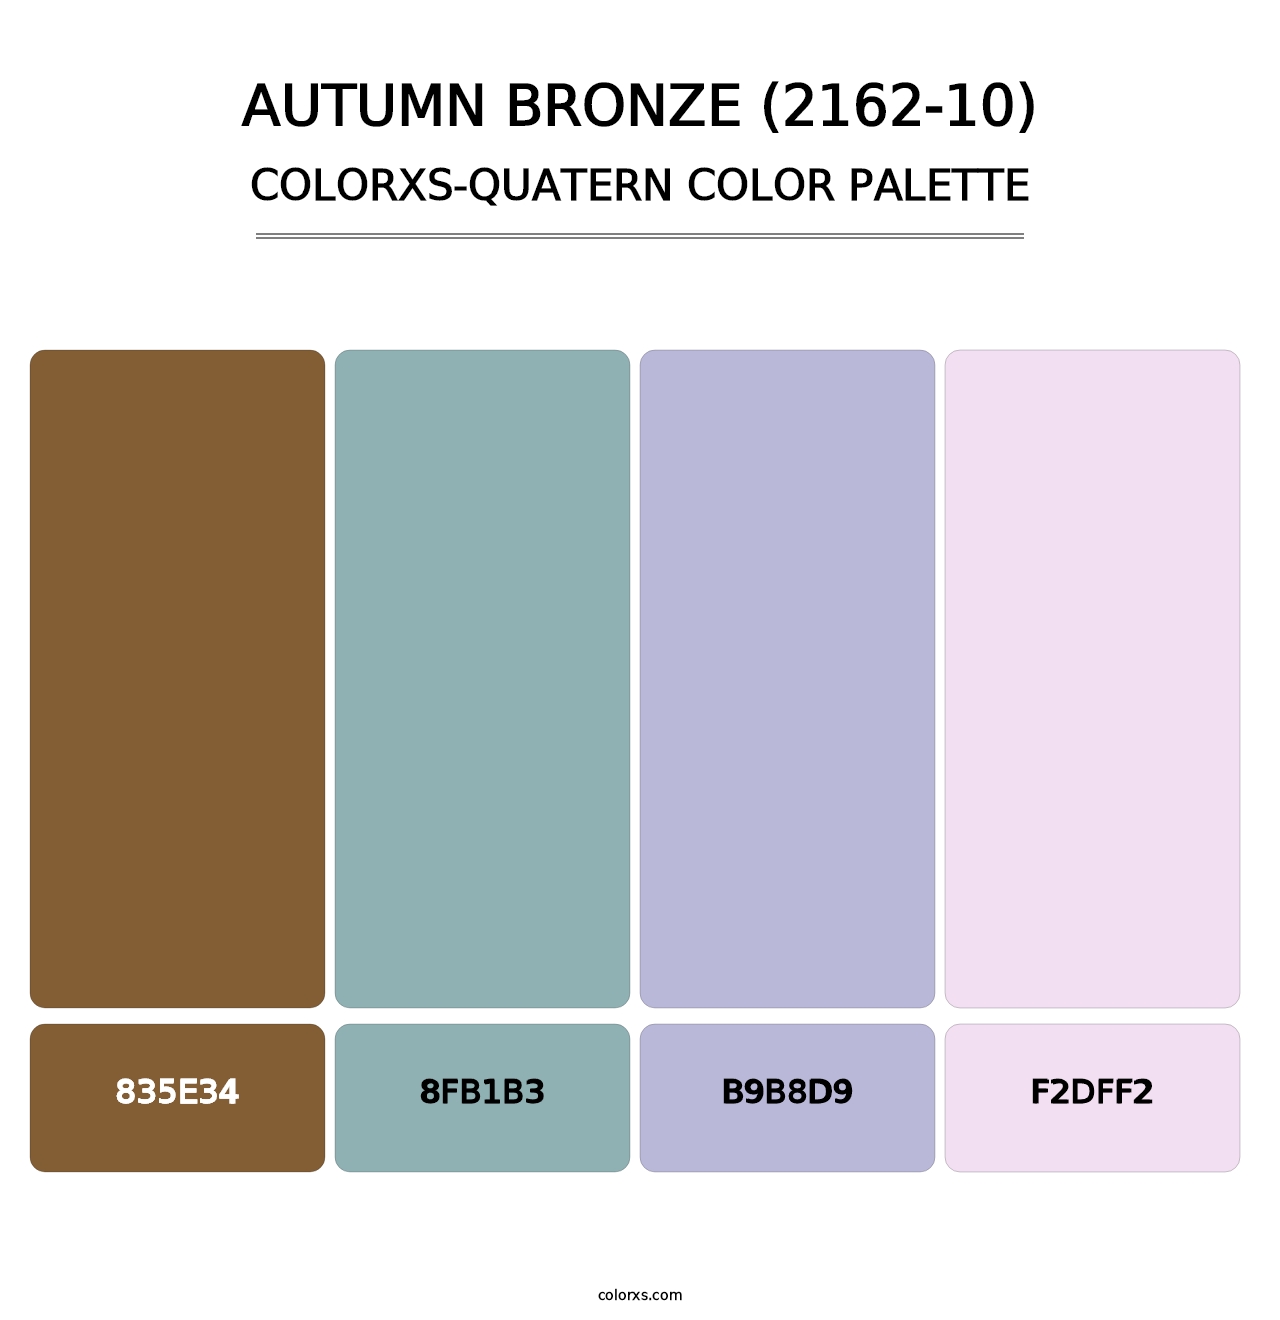 Autumn Bronze (2162-10) - Colorxs Quatern Palette